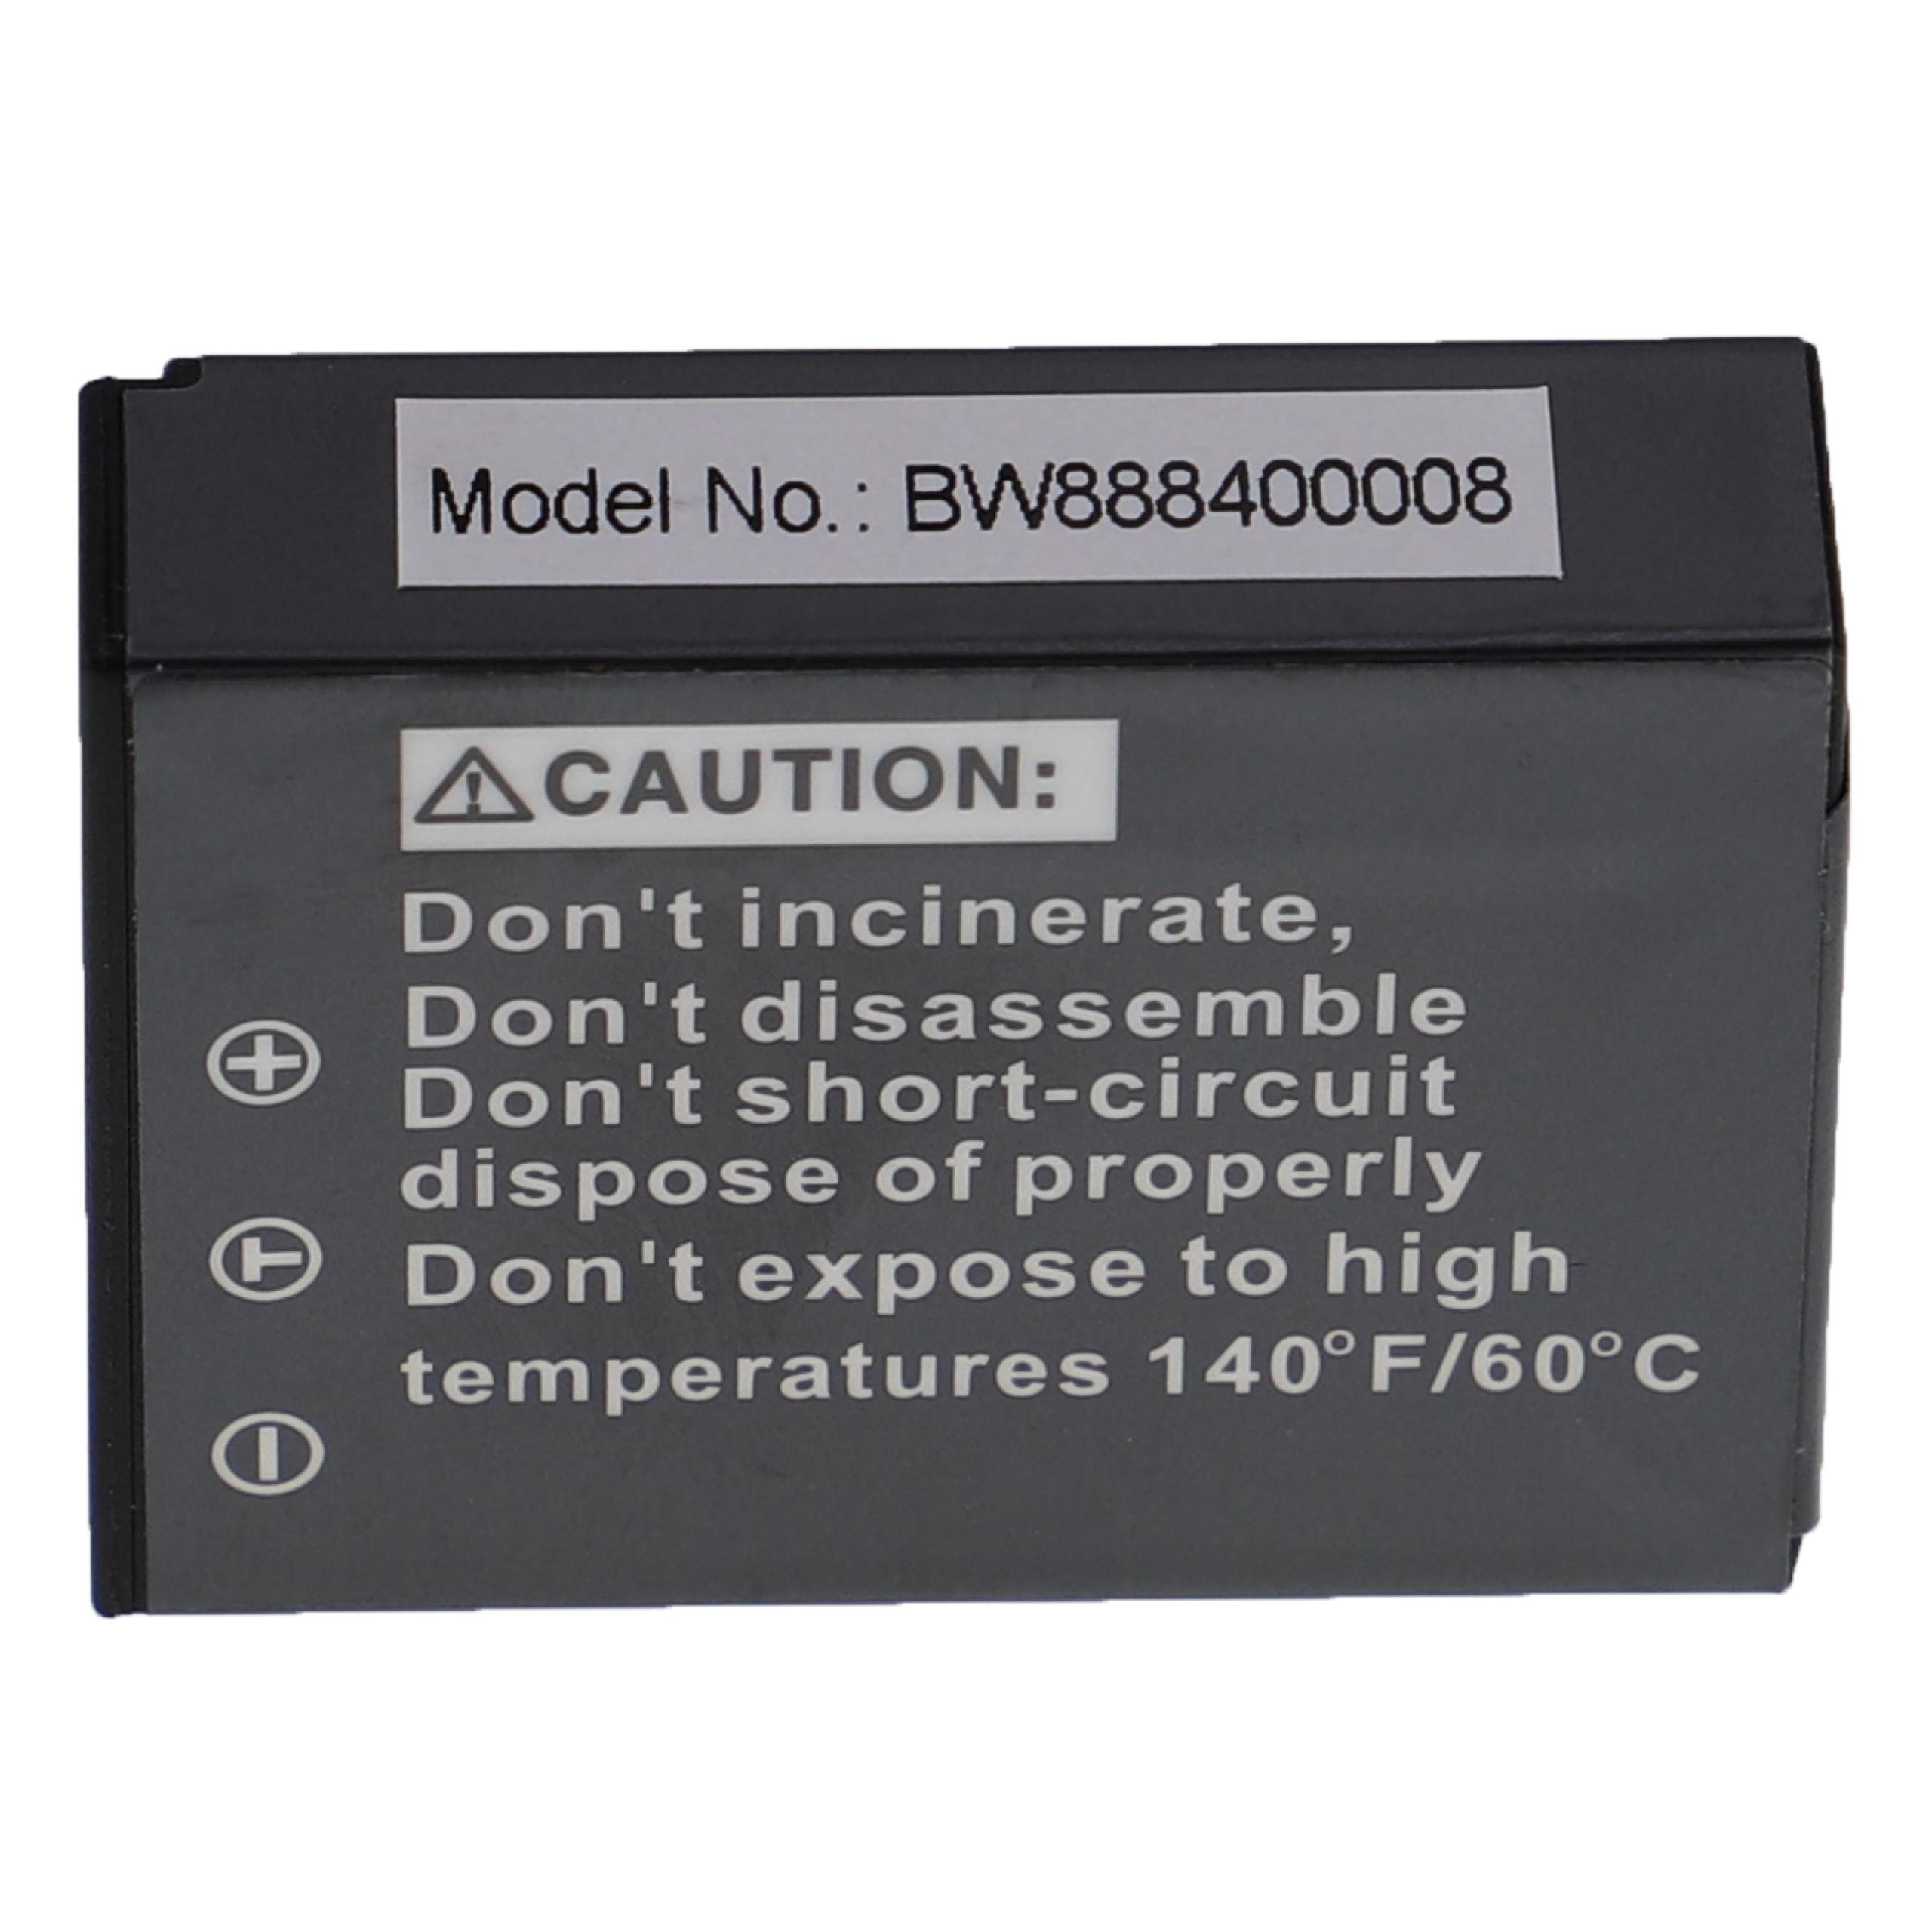 Batterie remplace Aiptek NP170, CB170, 084-07042L-062, CB-170 pour appareil photo - 1600mAh 3,6V Li-ion